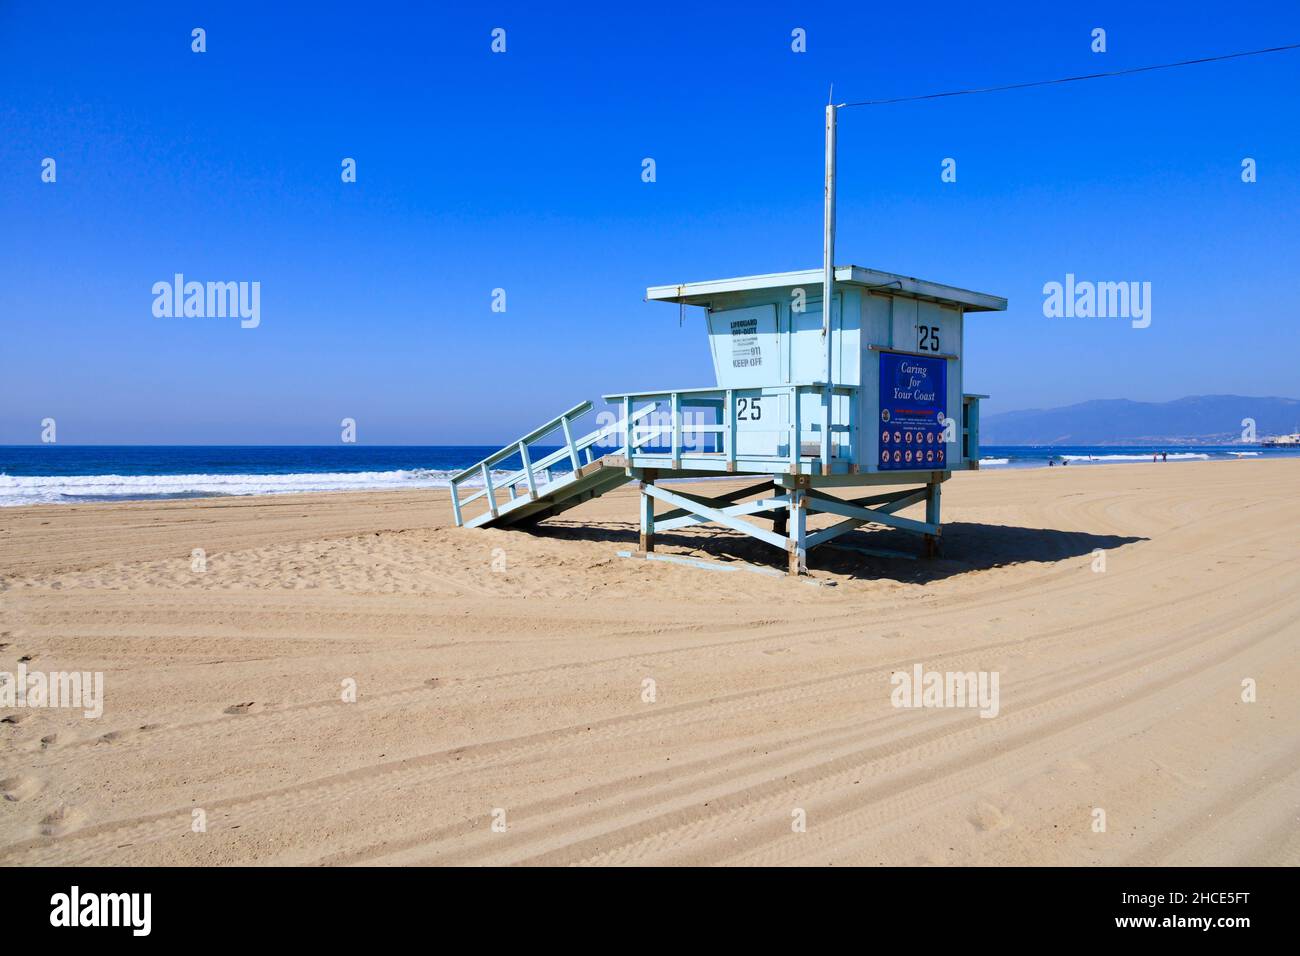 Küstenschutzhütte am Strand, Santa Monica, Kalifornien, USA. Stockfoto